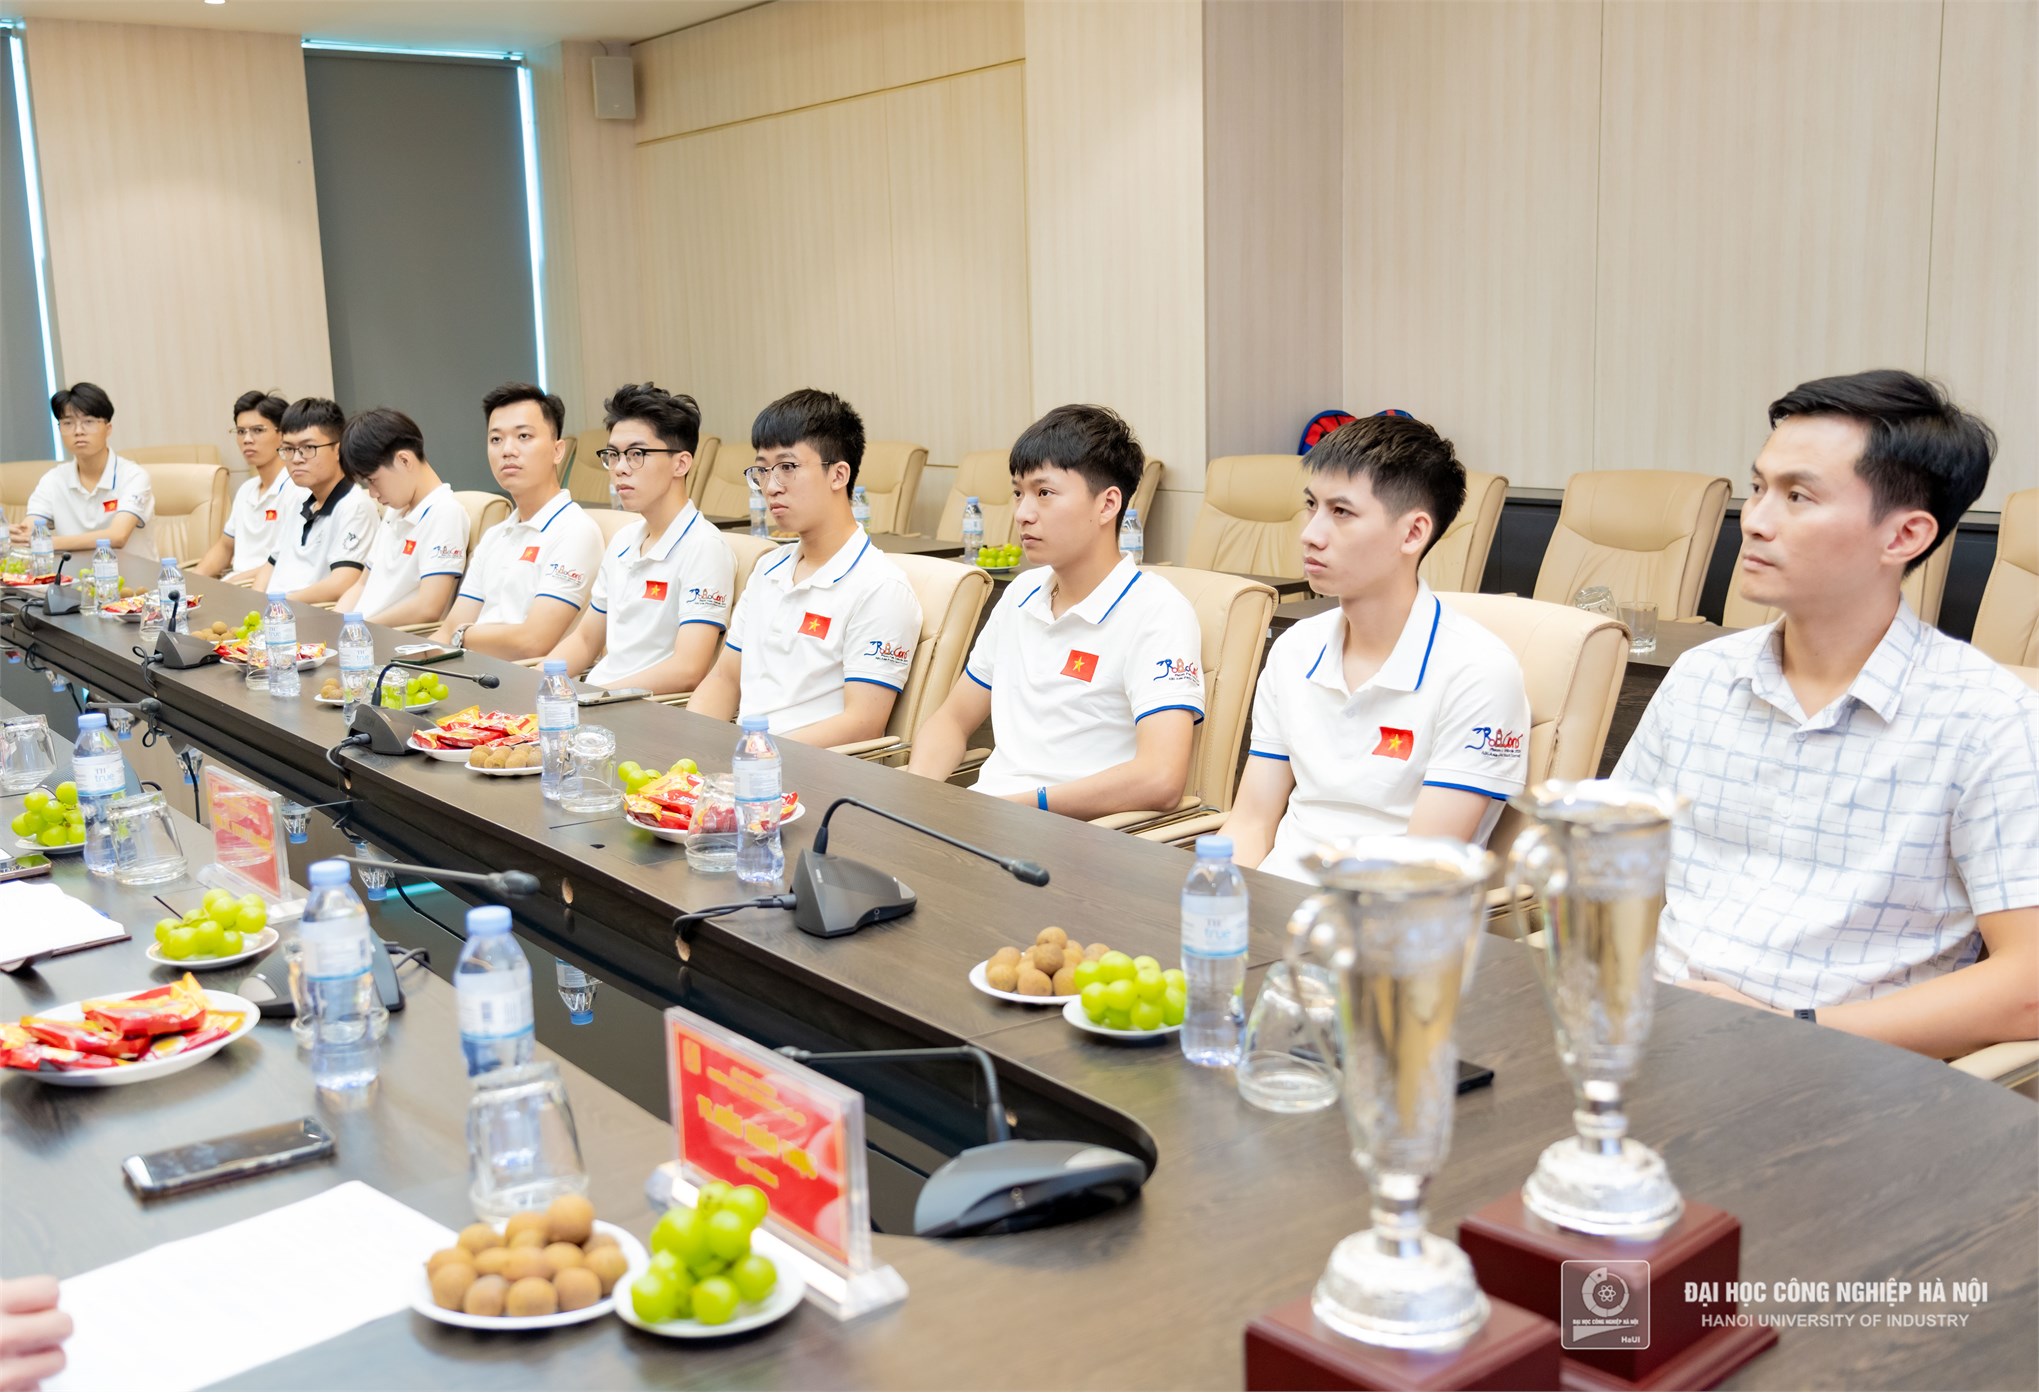 Đại học Công nghiệp Hà Nội khen thưởng 200 triệu đồng đội tuyển Robocon DCN-ĐT02 